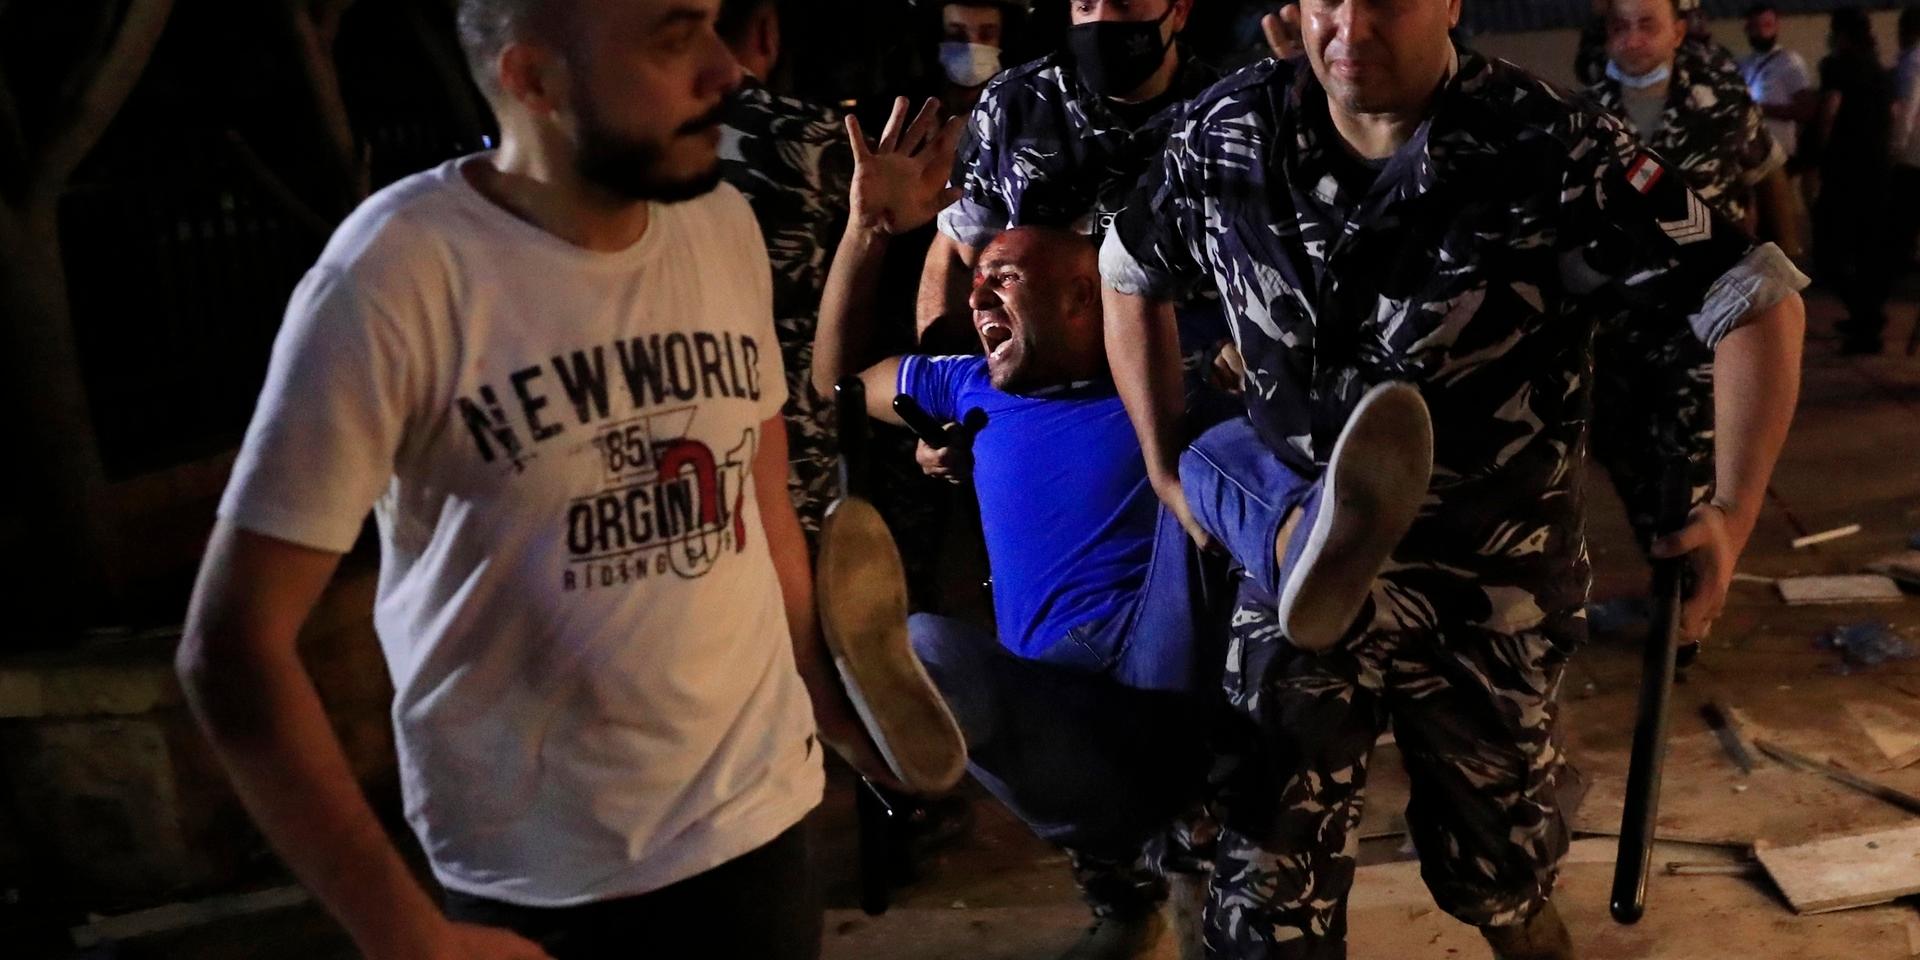 Polismän bär iväg en man som skadats i protester i Libanons huvudstad Beirut. Protesterna gäller vad som uppfattas som myndigheternas försök att förhindra en utredning av vad som låg bakom den omfattande explosionen. Arkivbild.